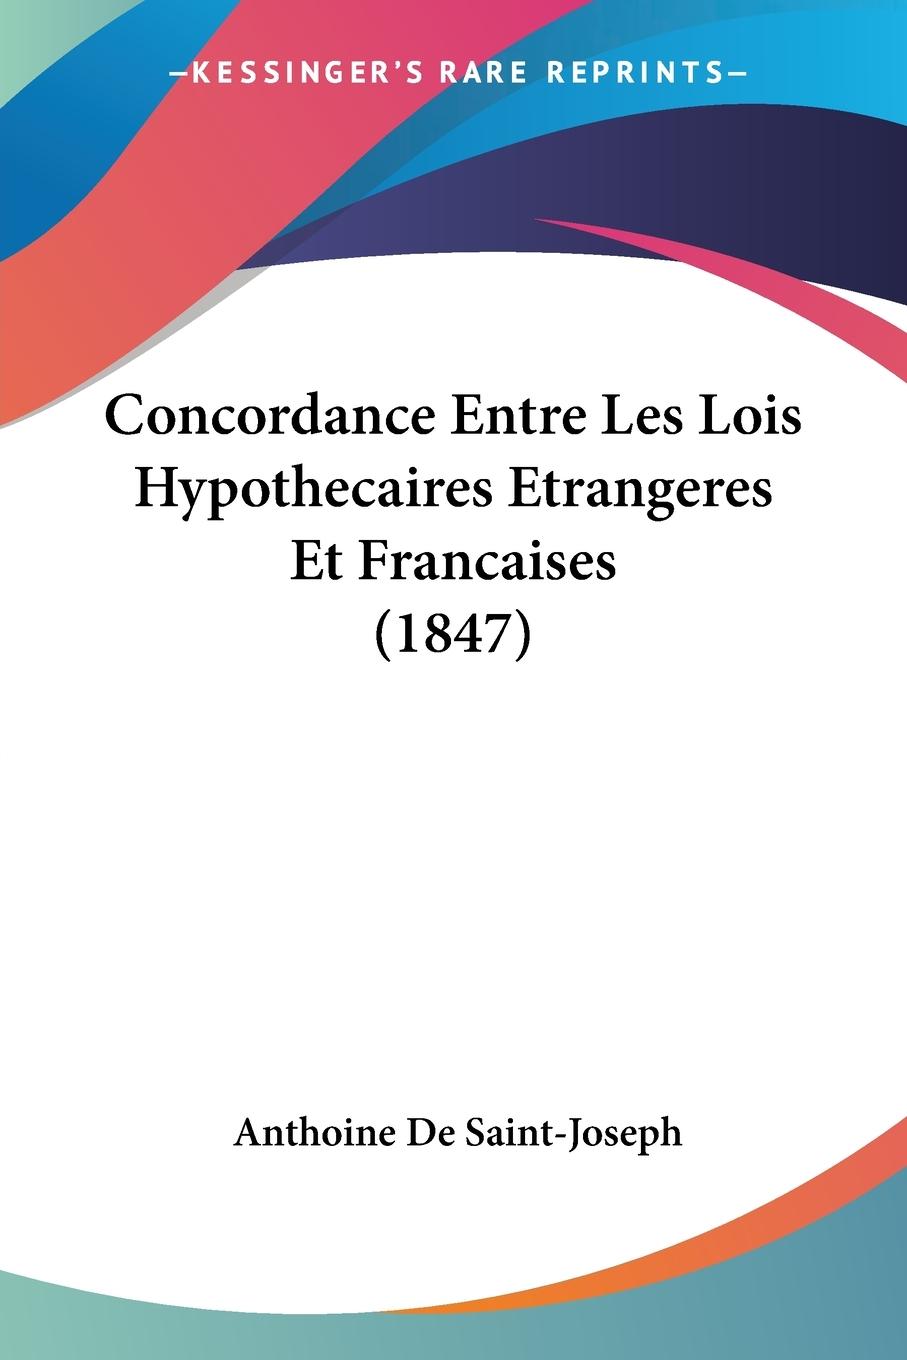 Concordance Entre Les Lois Hypothecaires Etrangeres Et Francaises (1847) - De Saint-Joseph, Anthoine